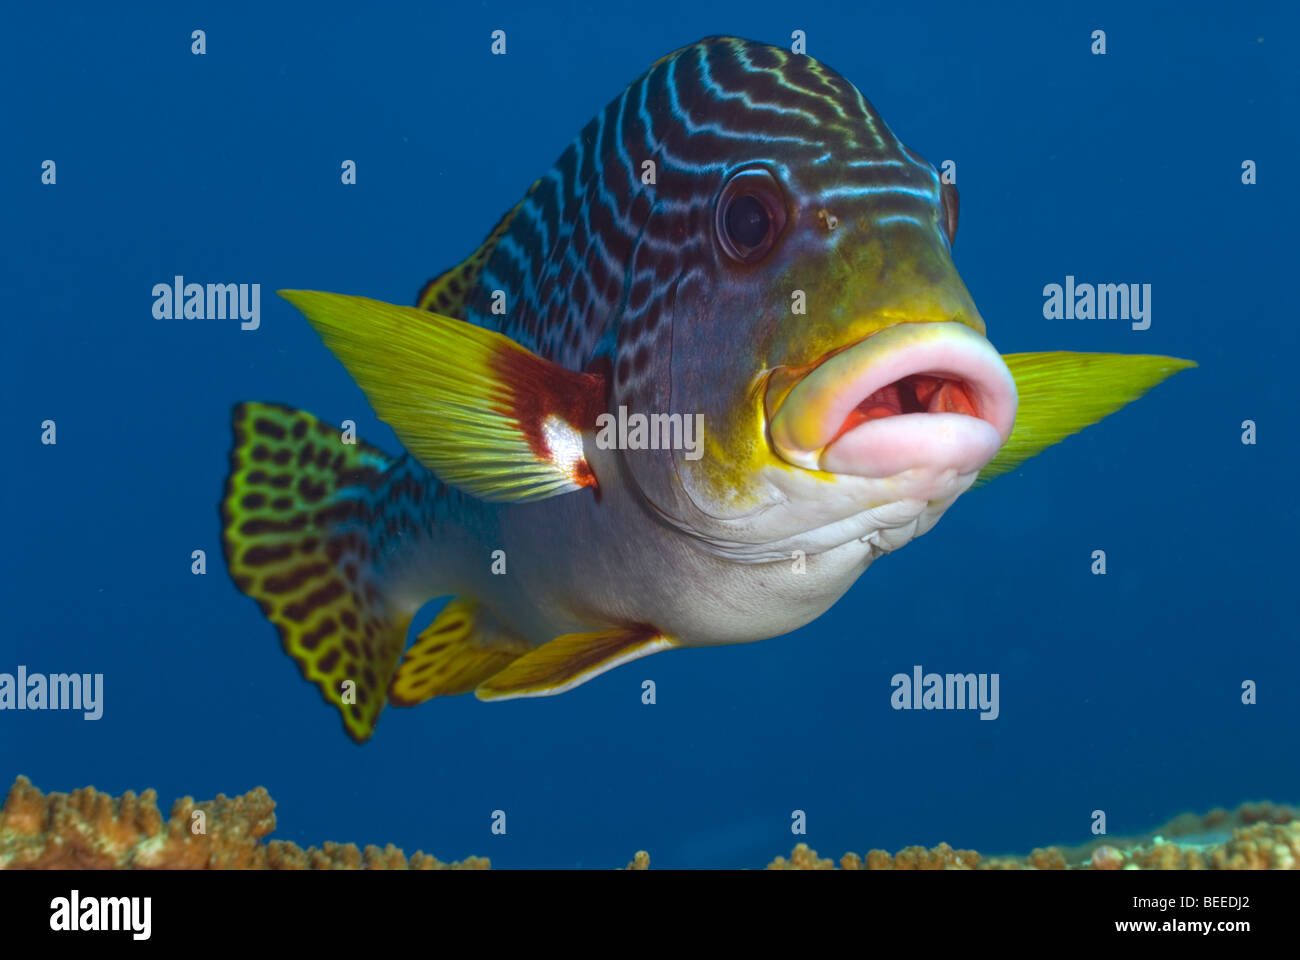 Labbra di pesce immagini e fotografie stock ad alta risoluzione - Alamy